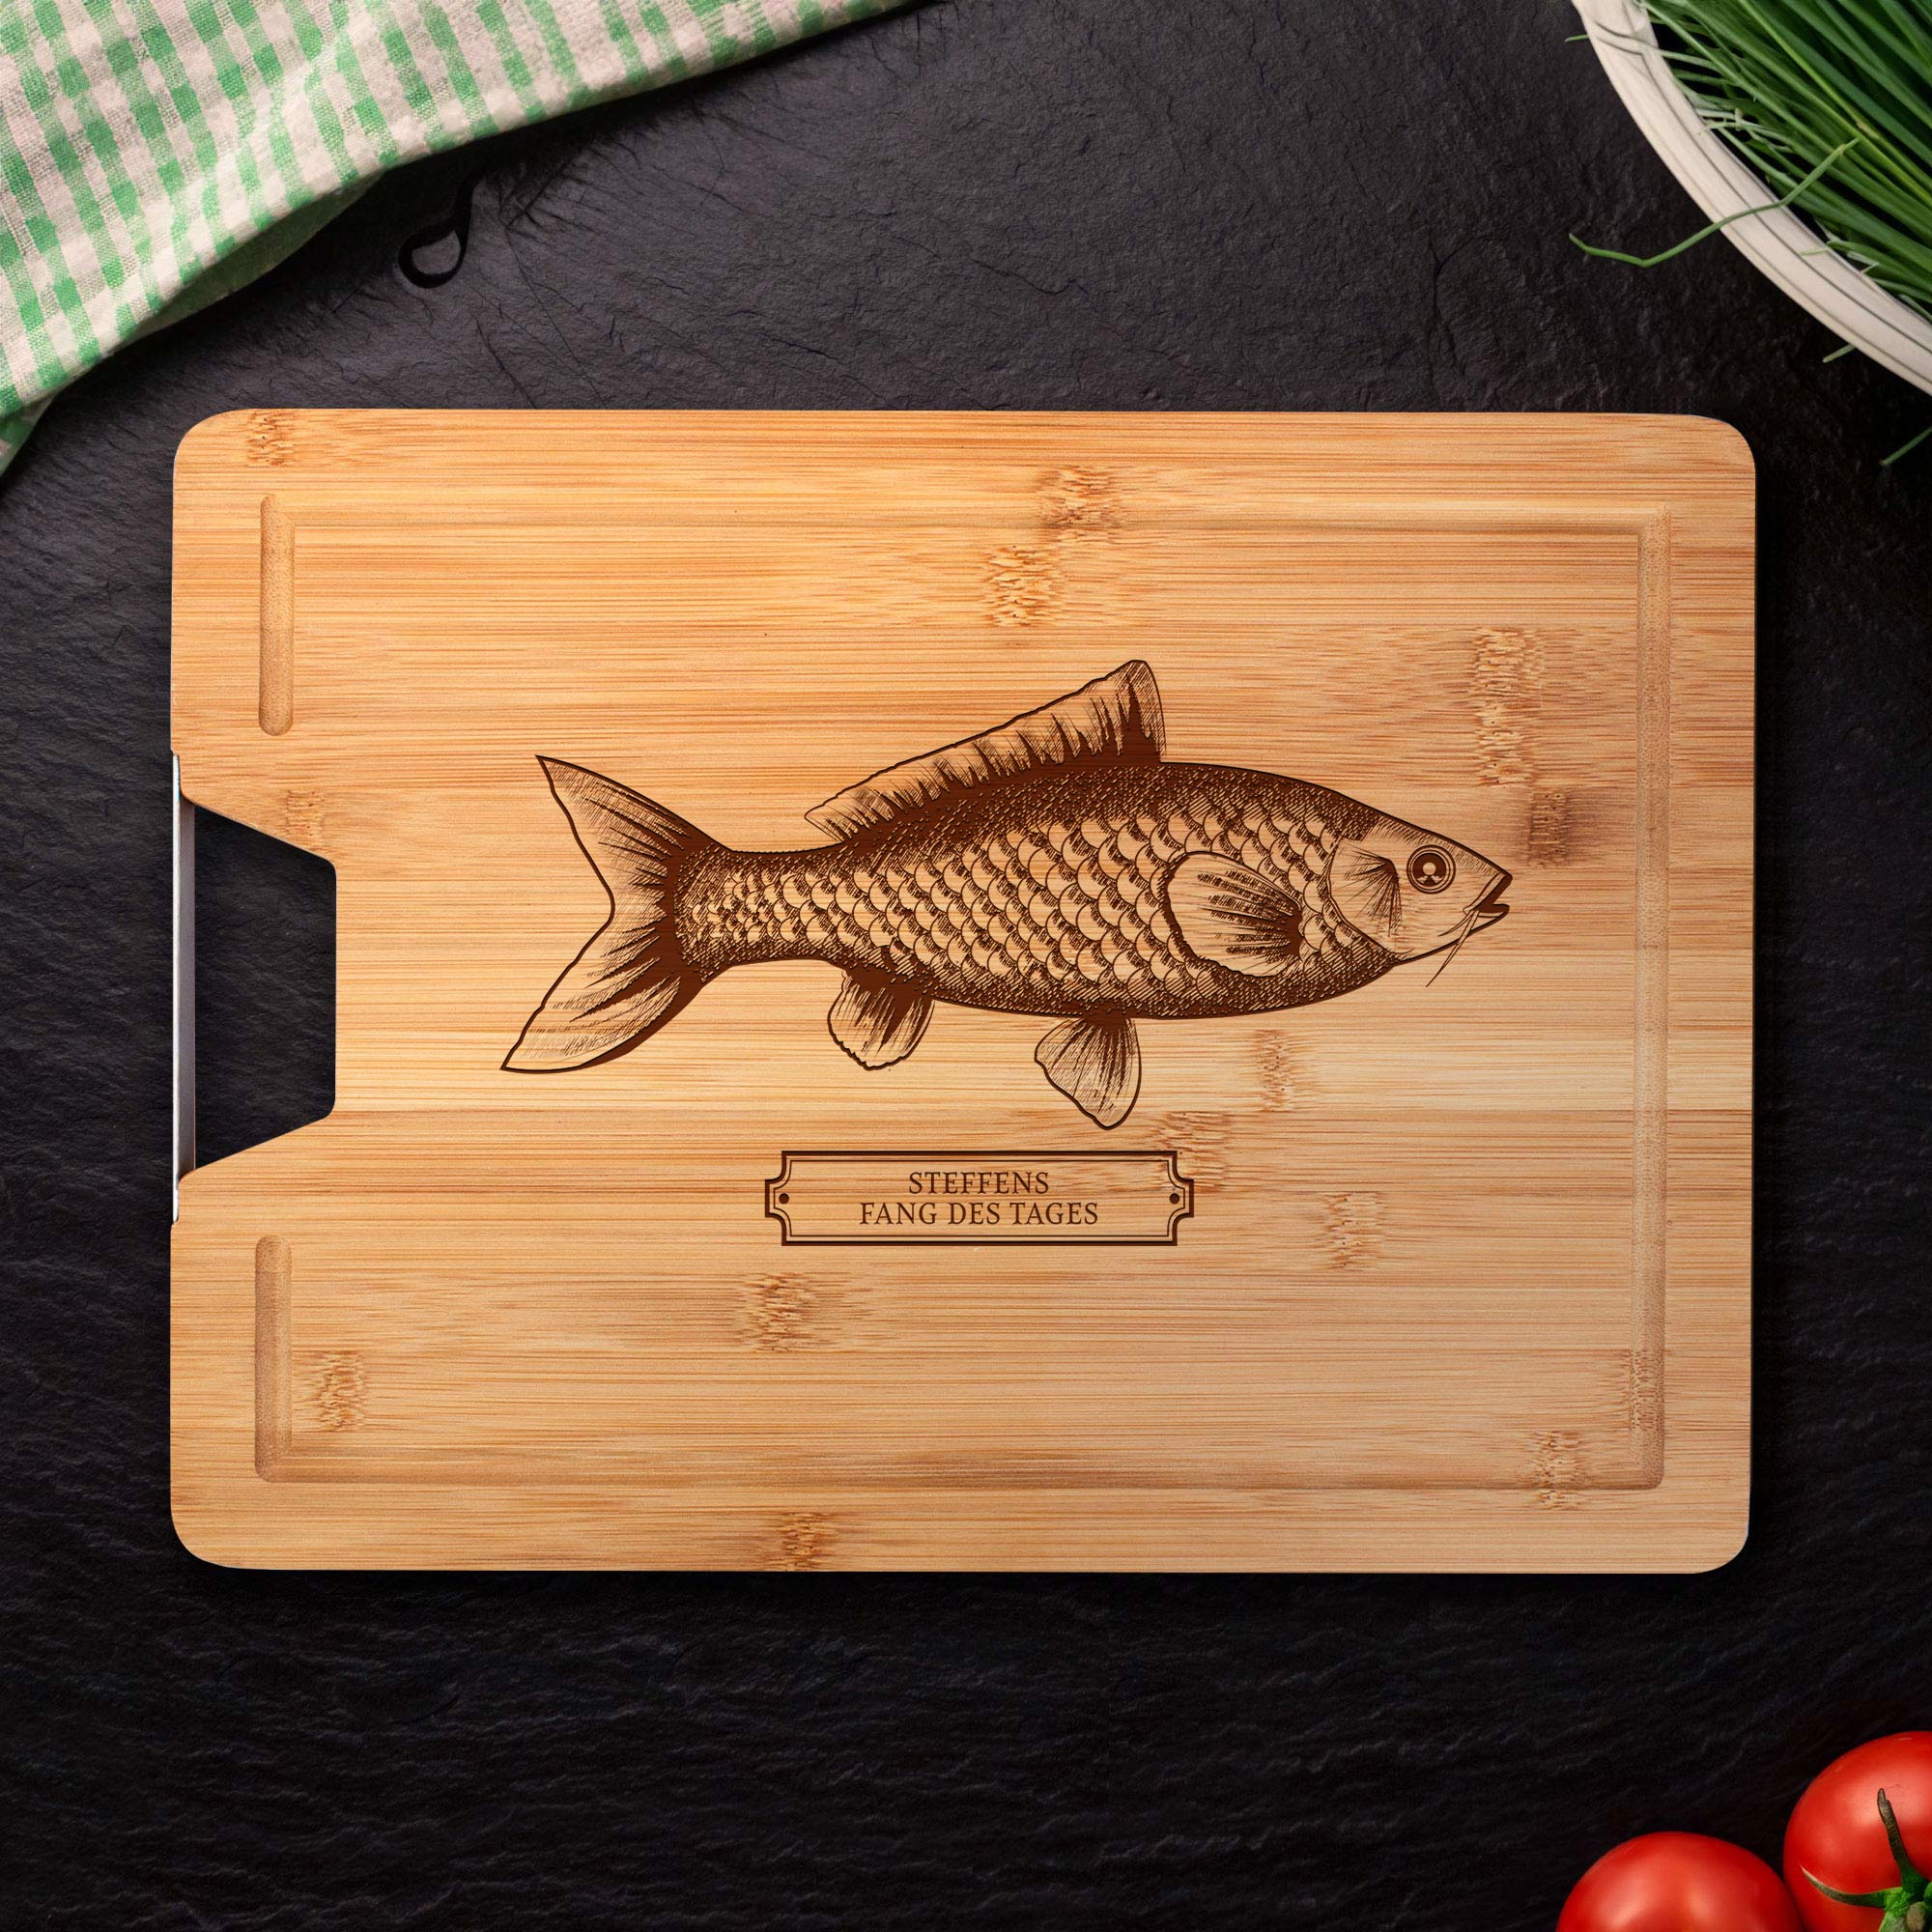 Bambusholz Grillbrett mit Metallgriff - Fisch - Personalisiert